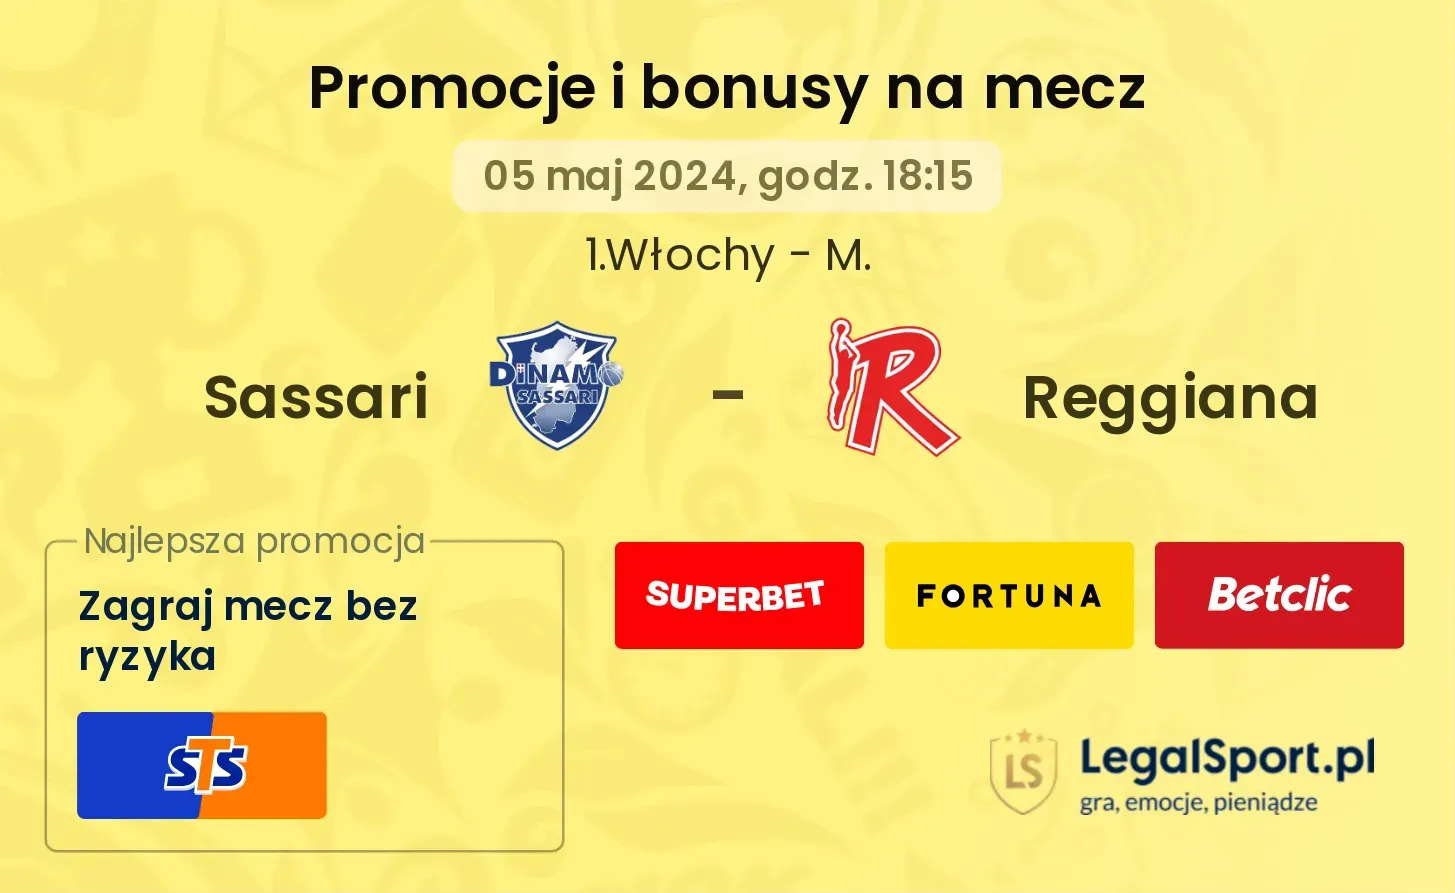 Sassari - Reggiana promocje bonusy na mecz